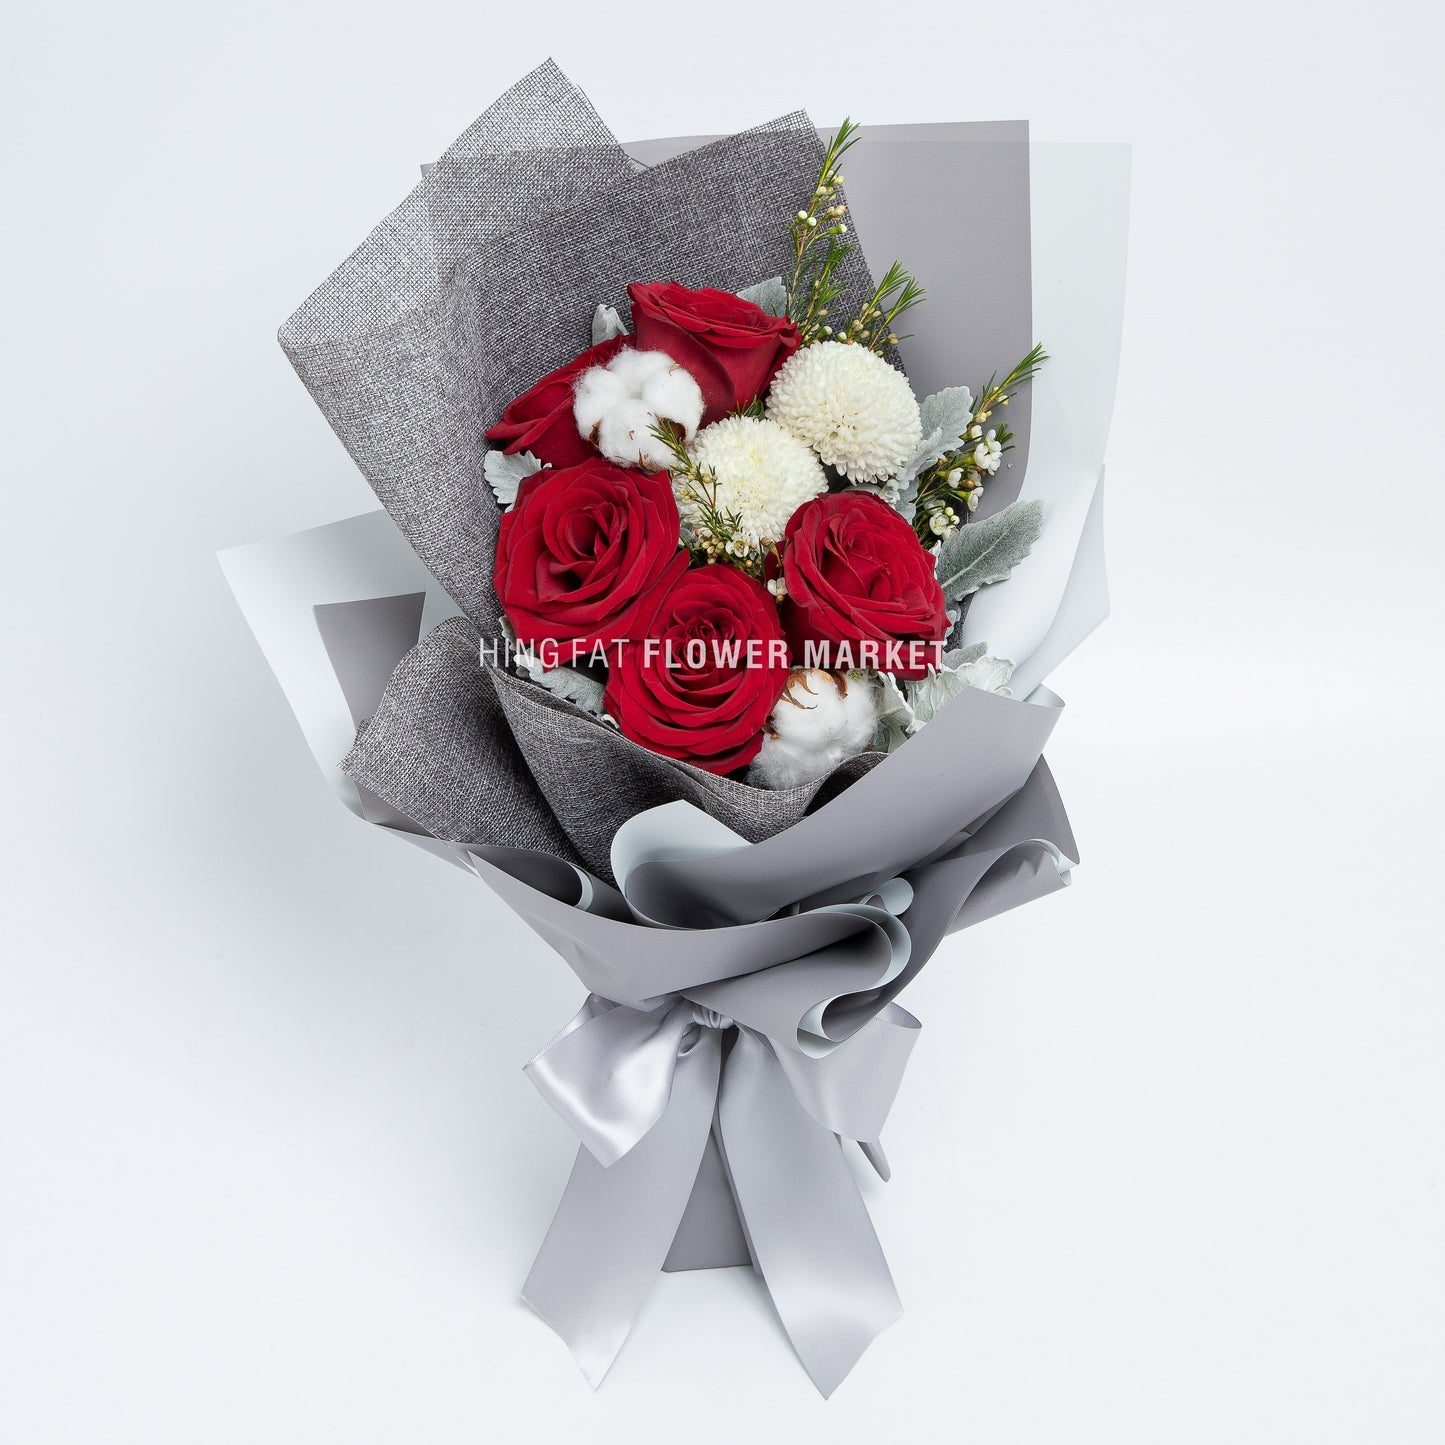 紅玫瑰棉花花束 Red rose and cotton bouquet